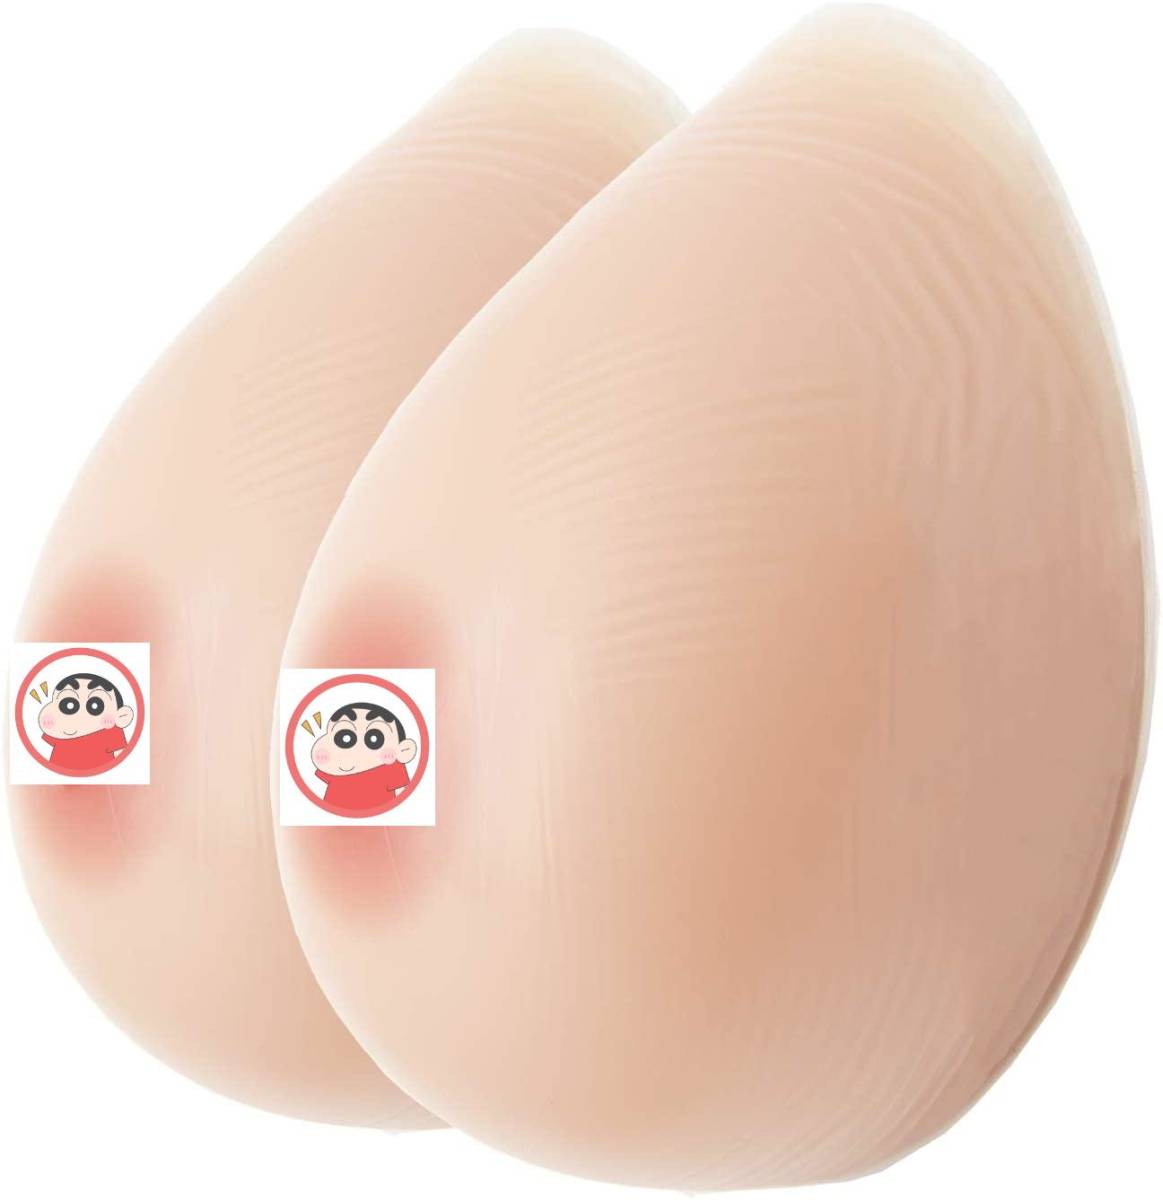 (Bカップ 300g*2個)シリコンバスト自然な一体感 粘着 貼付 式 人工乳房 左右 2個 偽のおっぱい ロールプレイ用 乳房切除術 偽娘の画像1